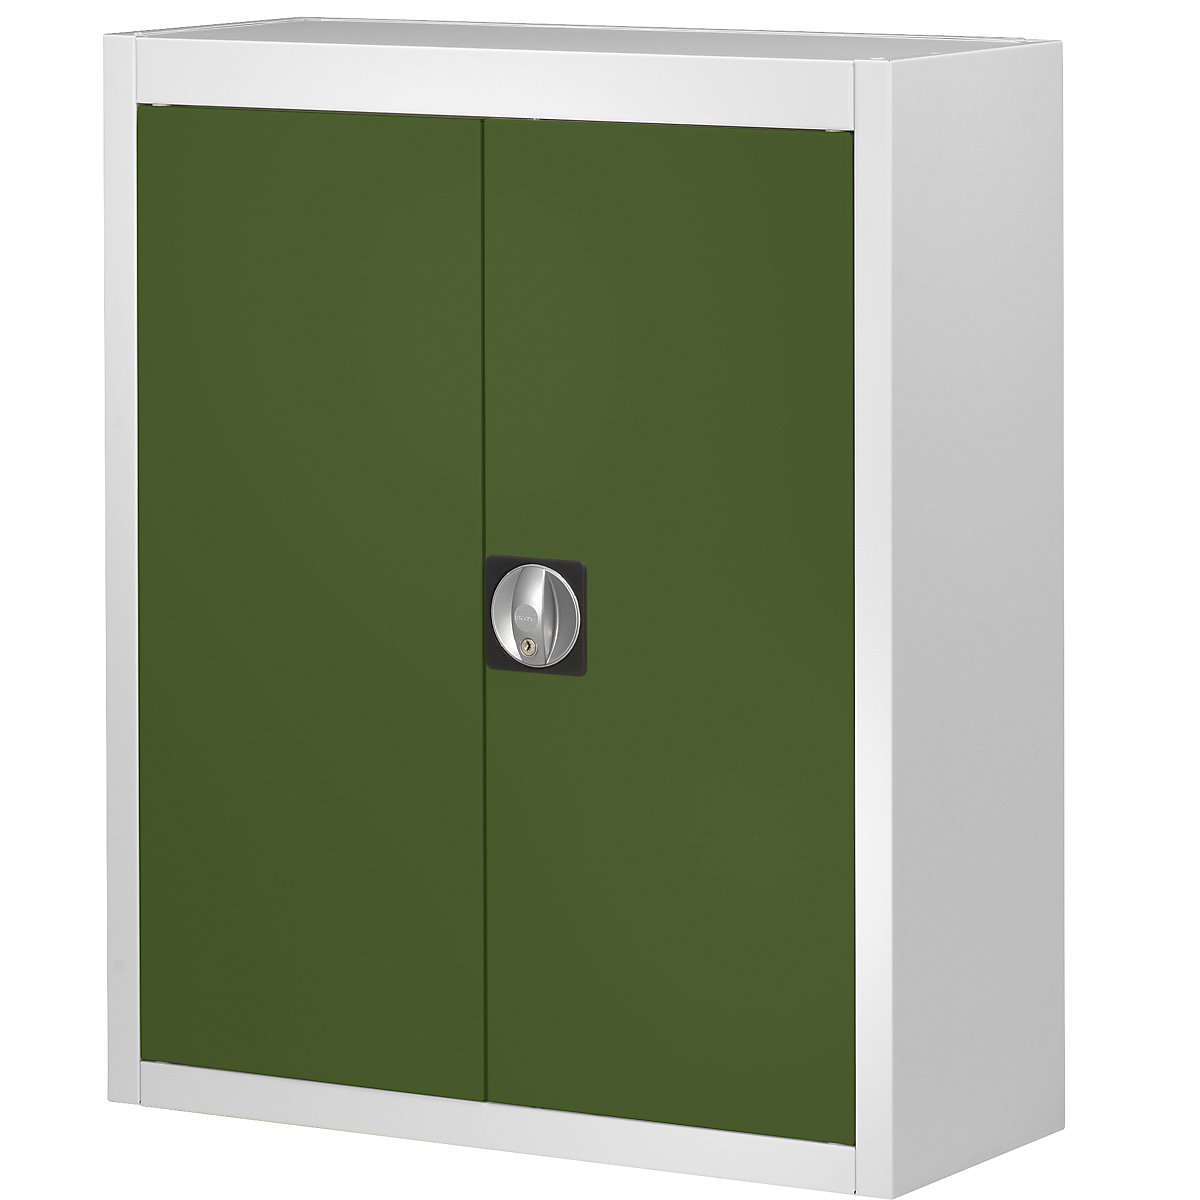 Magazinschrank, ohne Sichtlagerkästen mauser, HxBxT 820 x 680 x 280 mm, zweifarbig, Korpus grau, Türen grün, ab 3 Stk-6